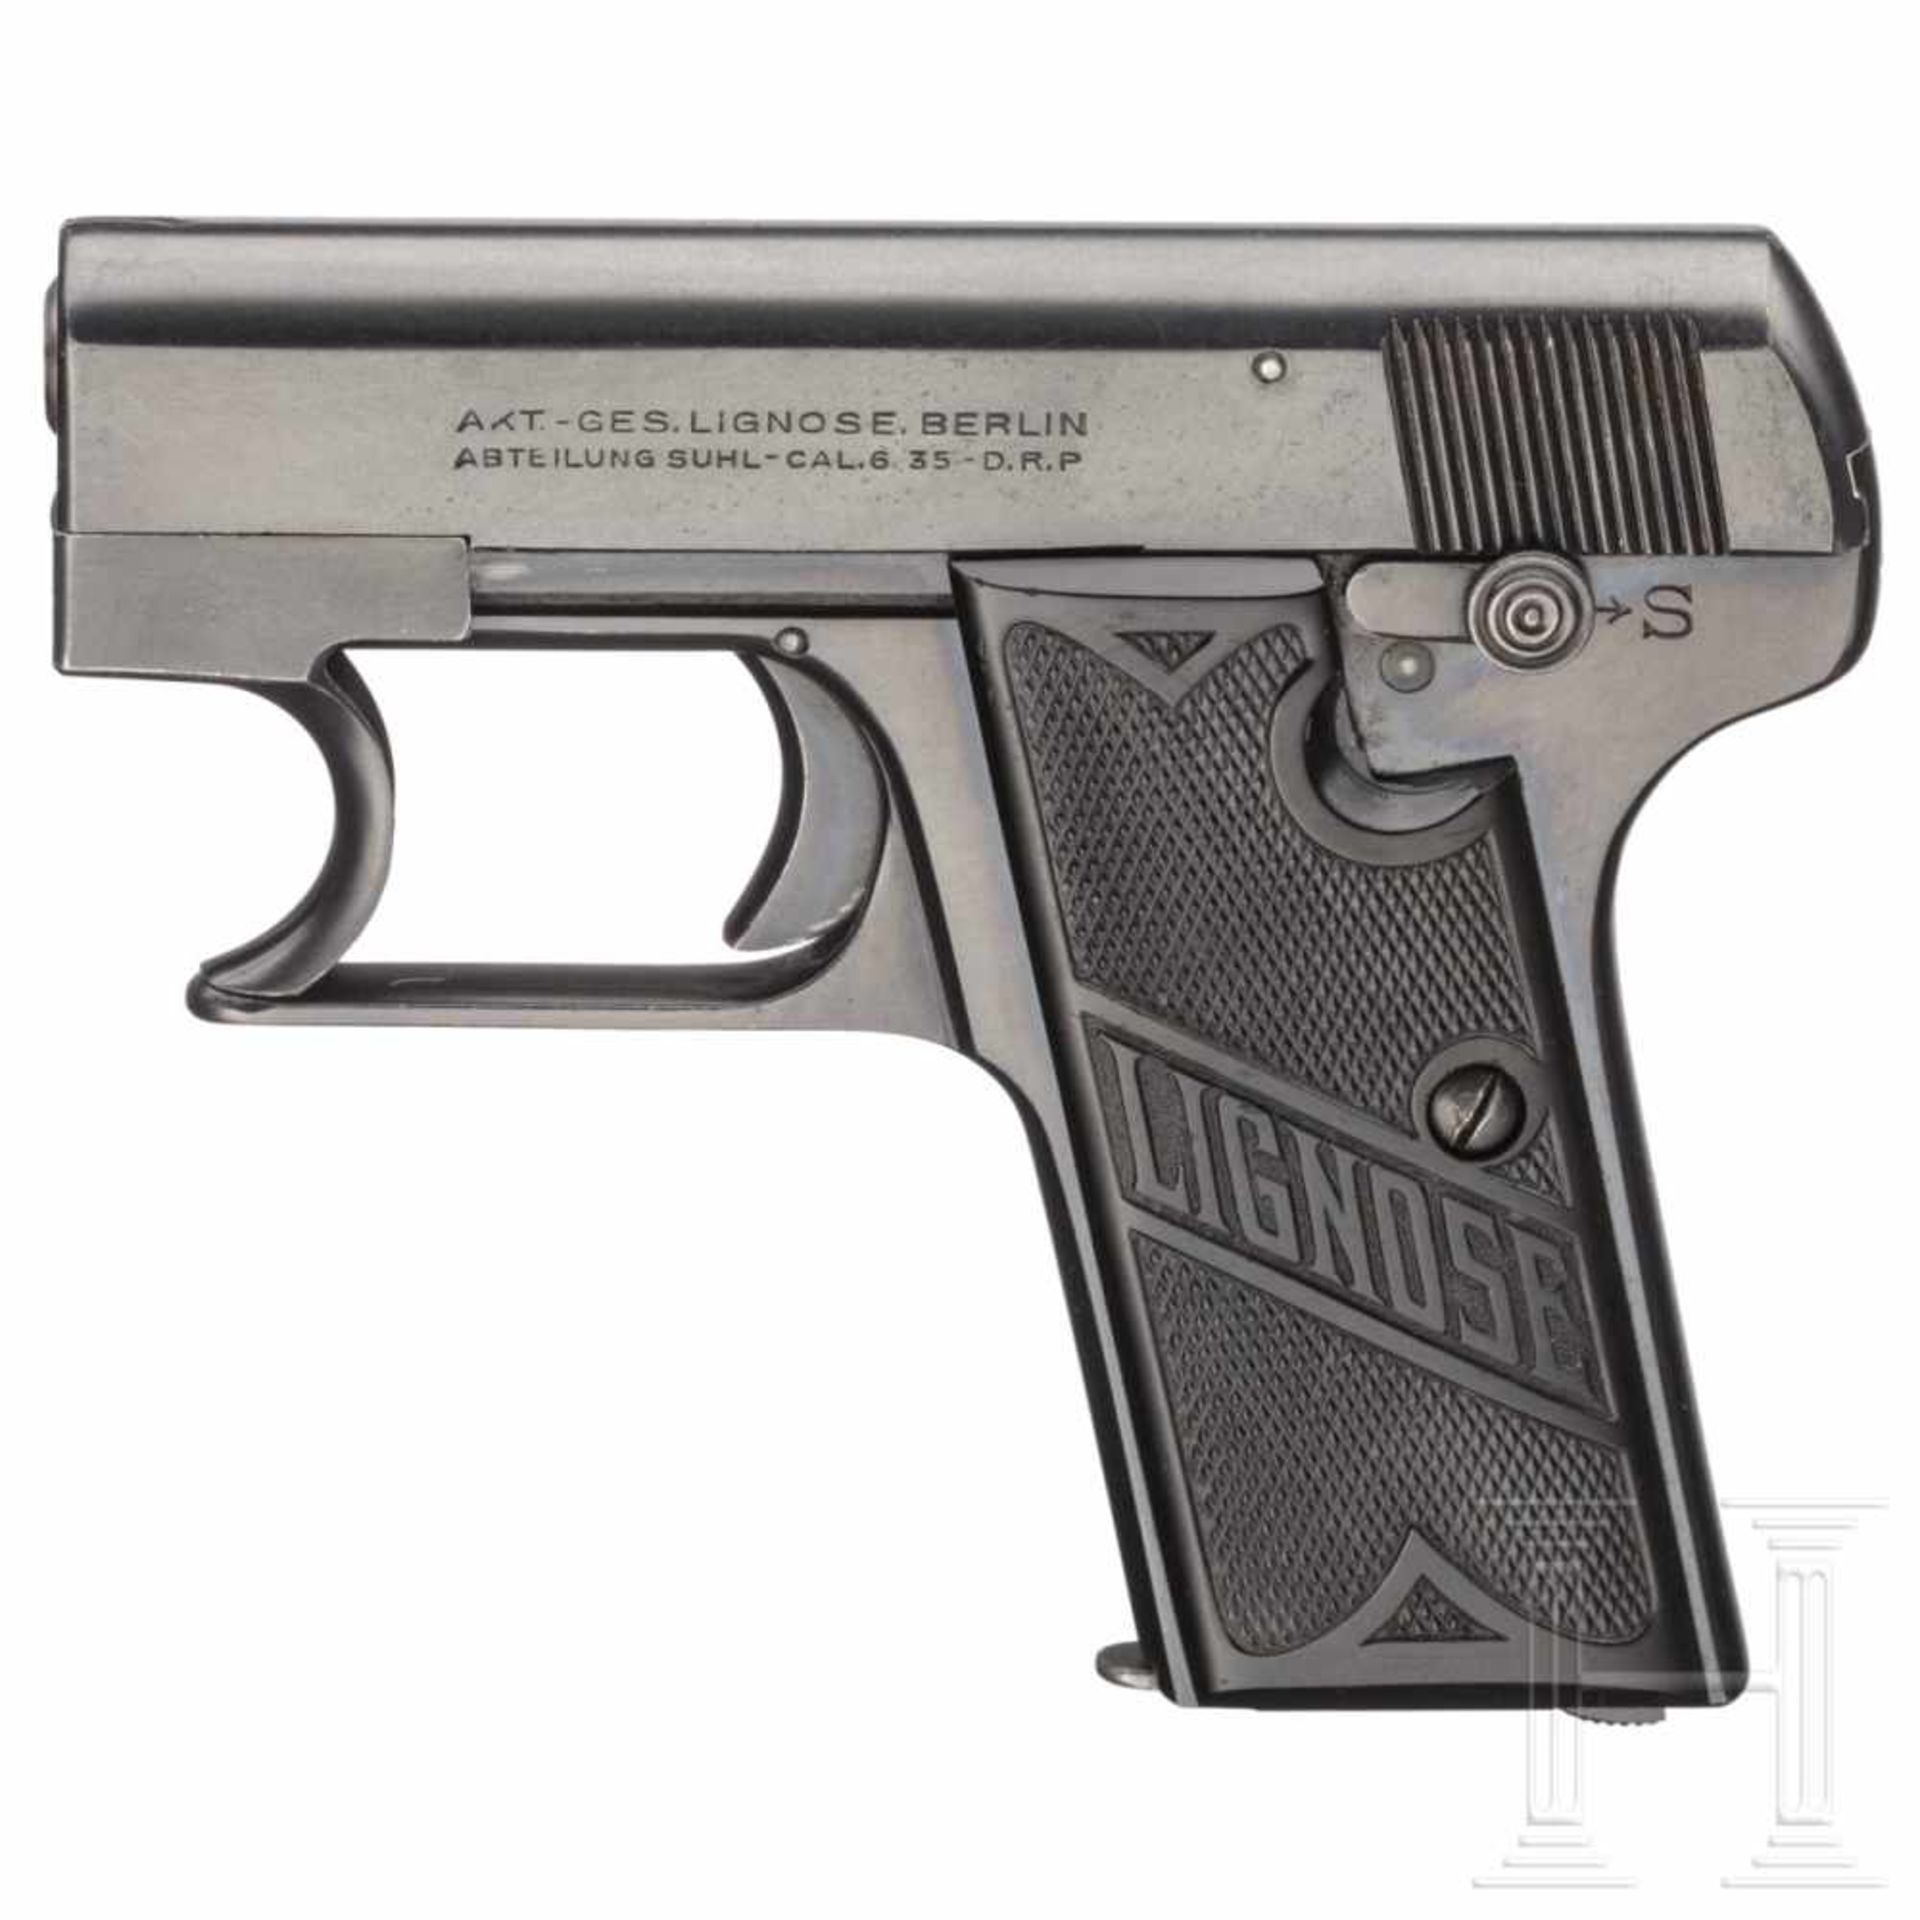 A Lignose M 3 A single-handed pistolKal. 6,35 mm Brown., Nr. 44703, nummerngleich. Blanker Lauf.